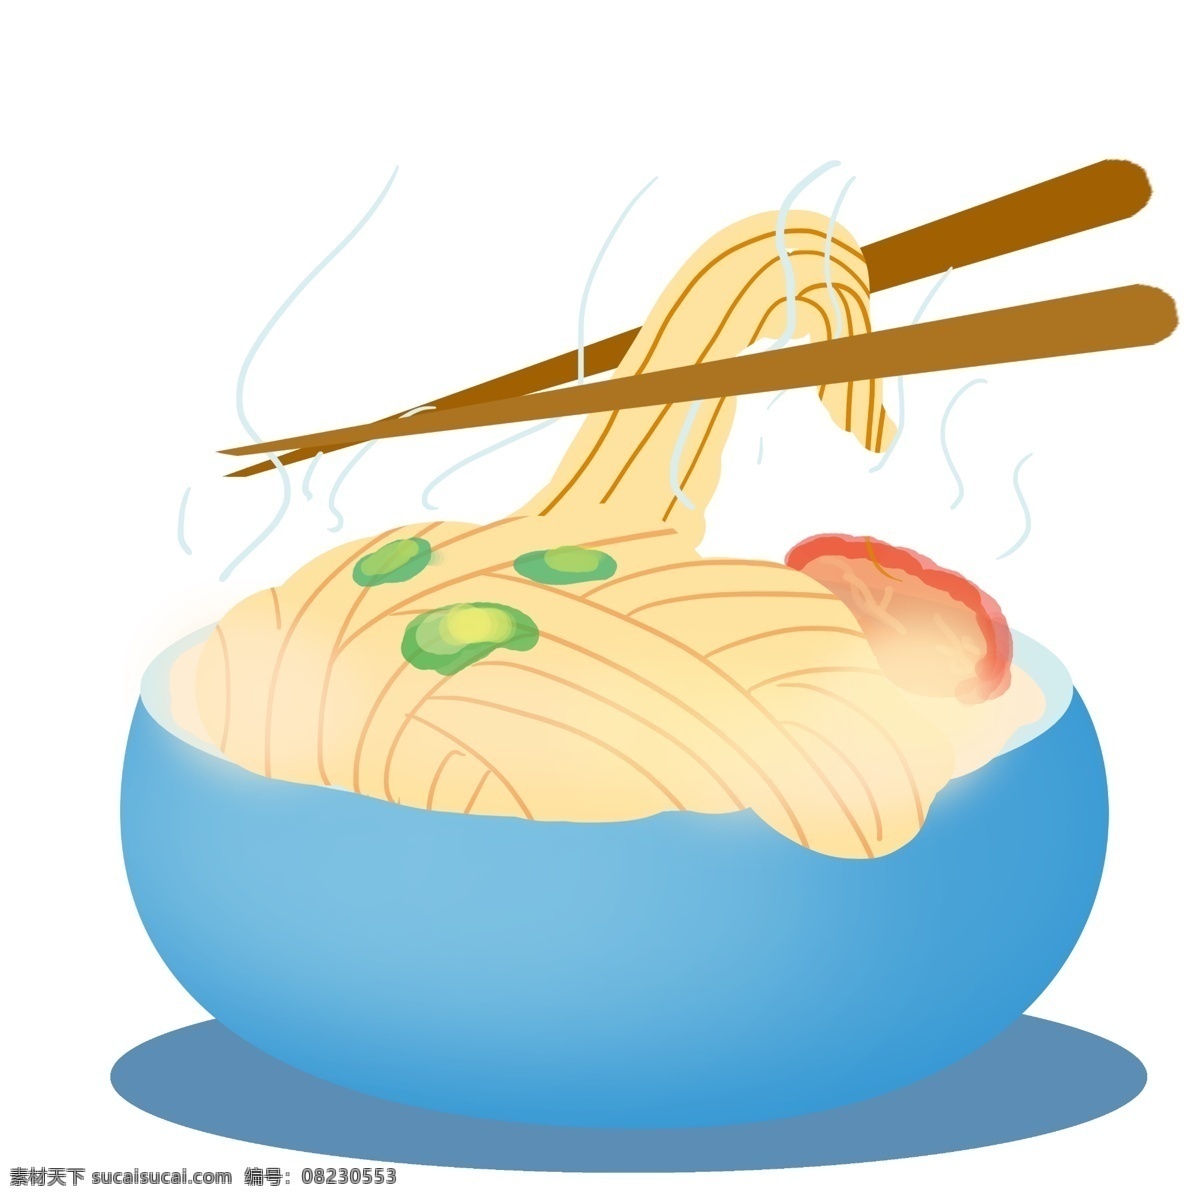 美味 黄色 面条 插画 蓝色的碗具 筷子 拉面 卡通食物插画 创意拉面插画 美味的面条 精致 食物